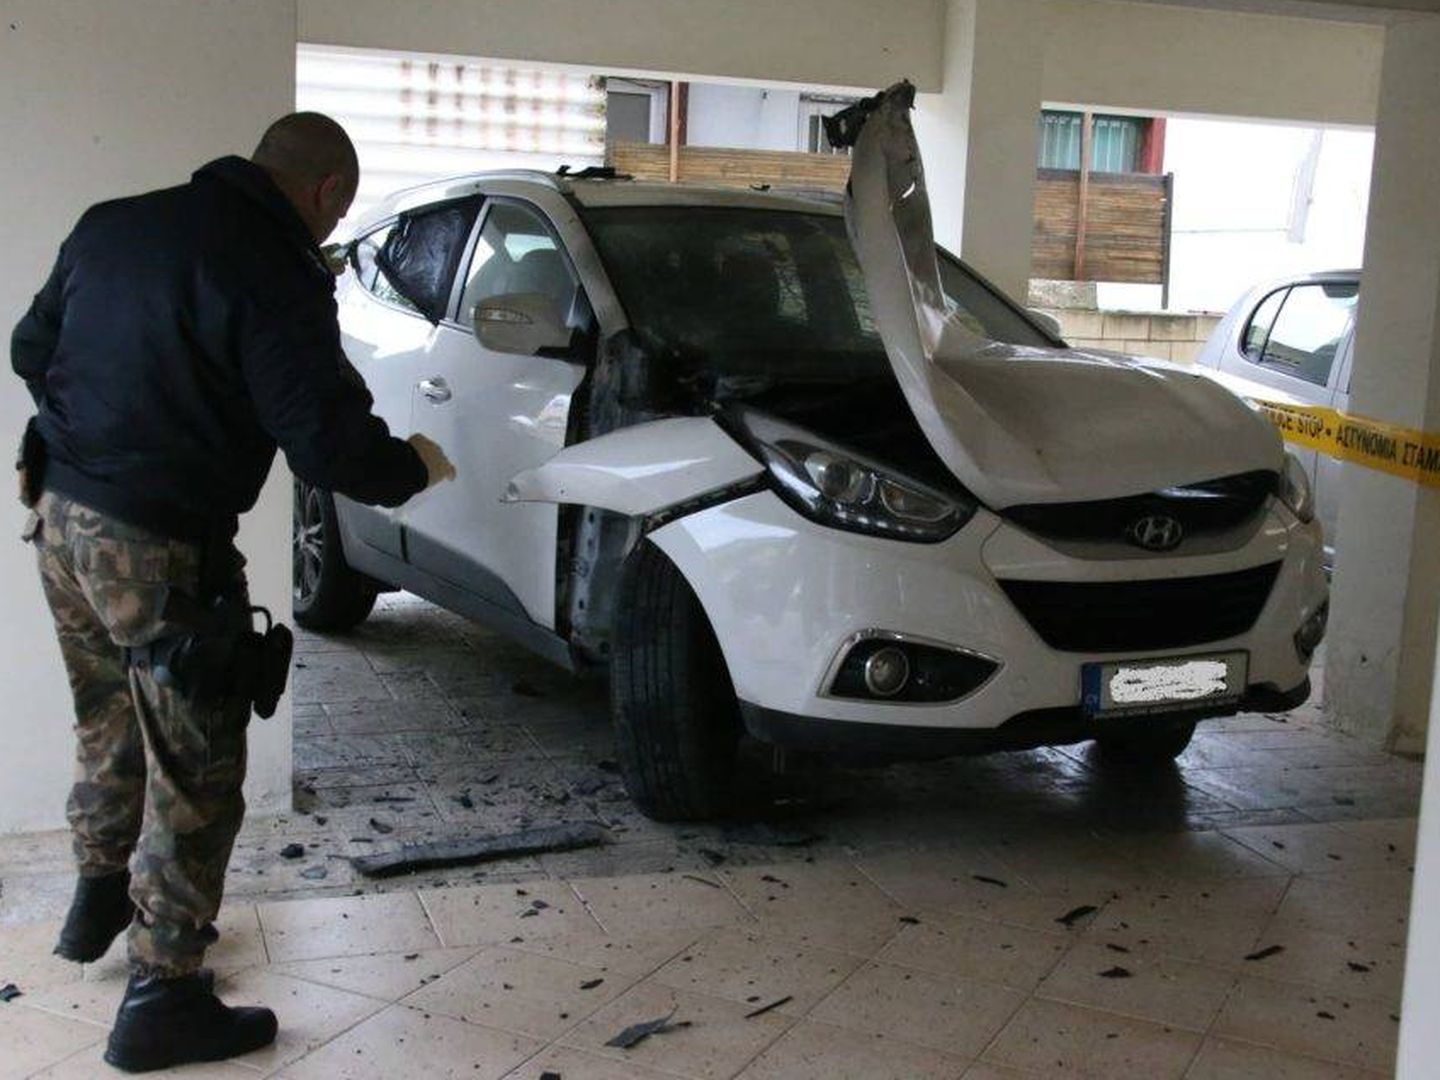 Bomba colocada el pasado enero en Larnaca (Chipre) en el coche de un árbitro de 33 años.